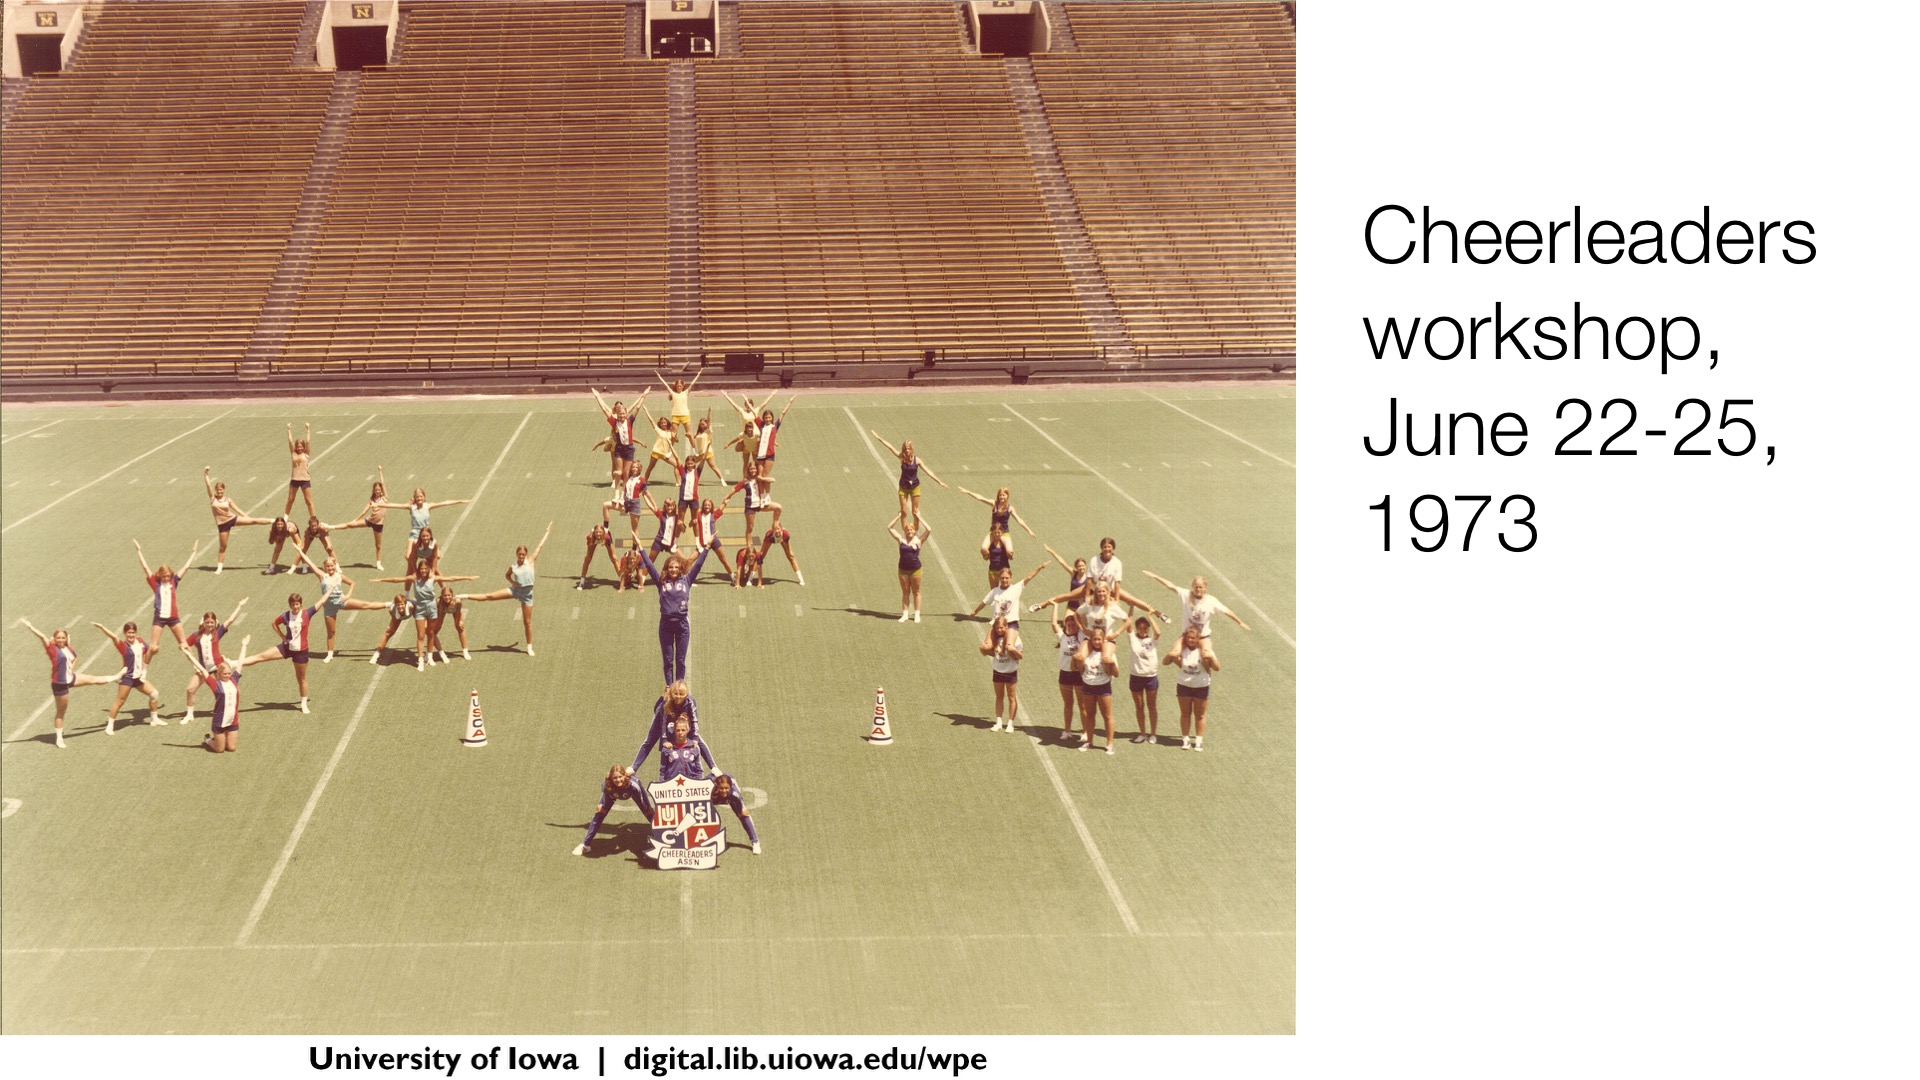 Cheerleaders workshop, June 22-25 1973